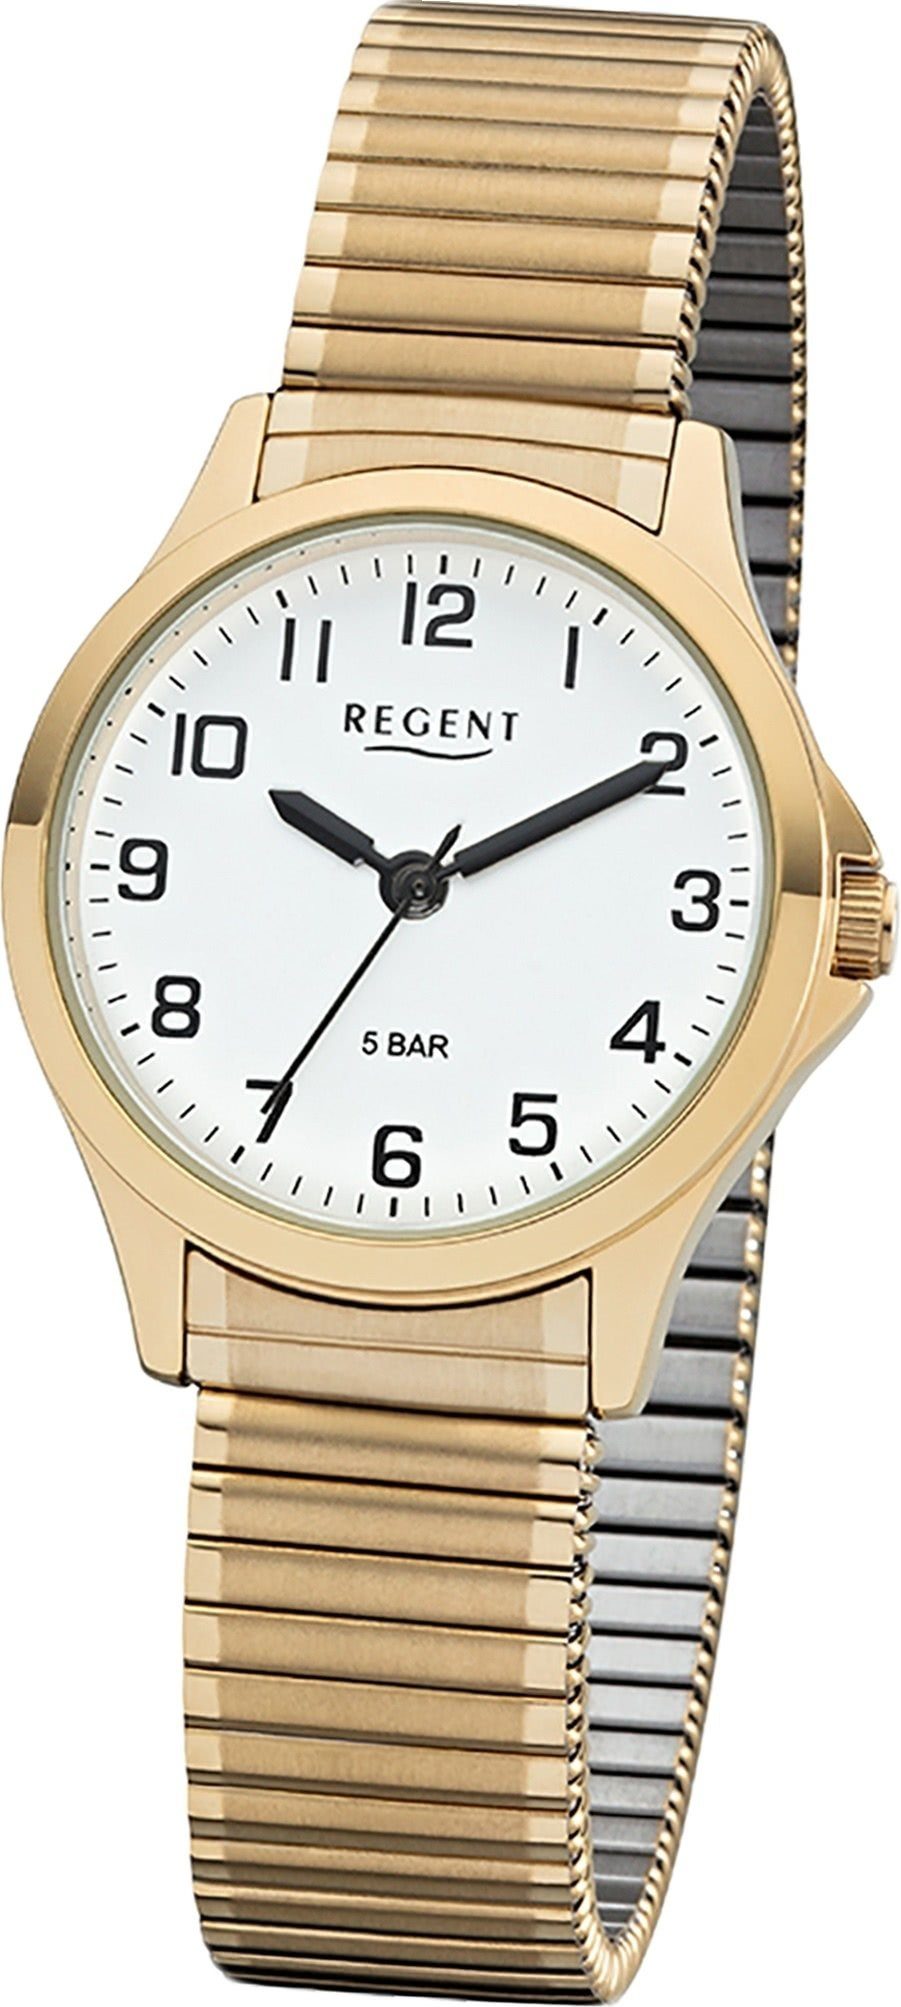 Regent Quarzuhr Regent Metall Damen Uhr 2243489 Analog, Damenuhr Metallarmband gold, rundes Gehäuse, klein (ca. 29mm)